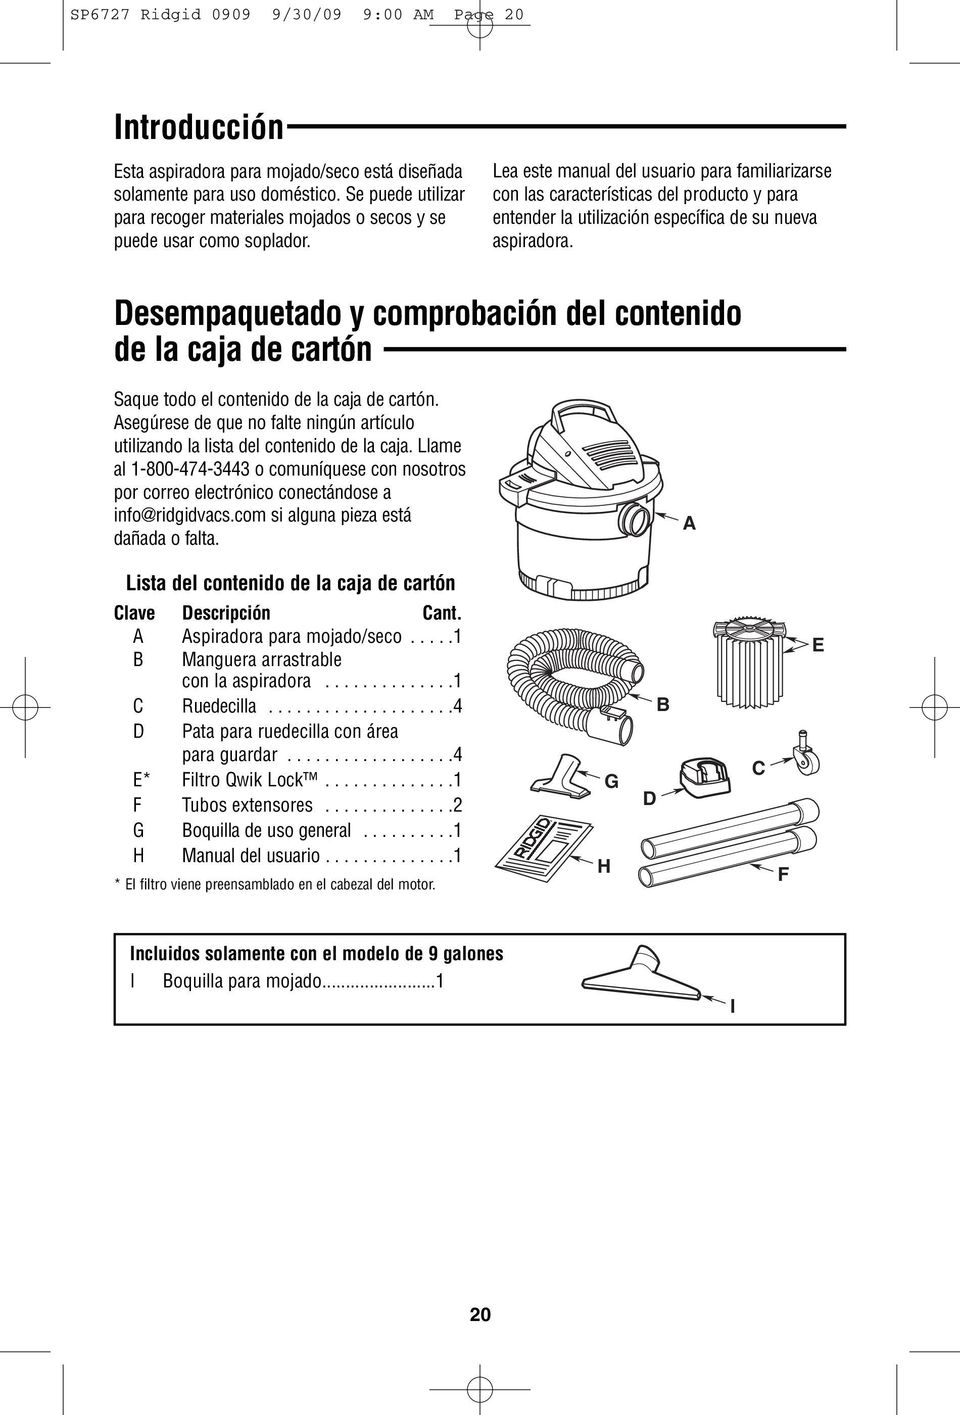 Lea este manual del usuario para familiarizarse con las características del producto y para entender la utilización específica de su nueva aspiradora.